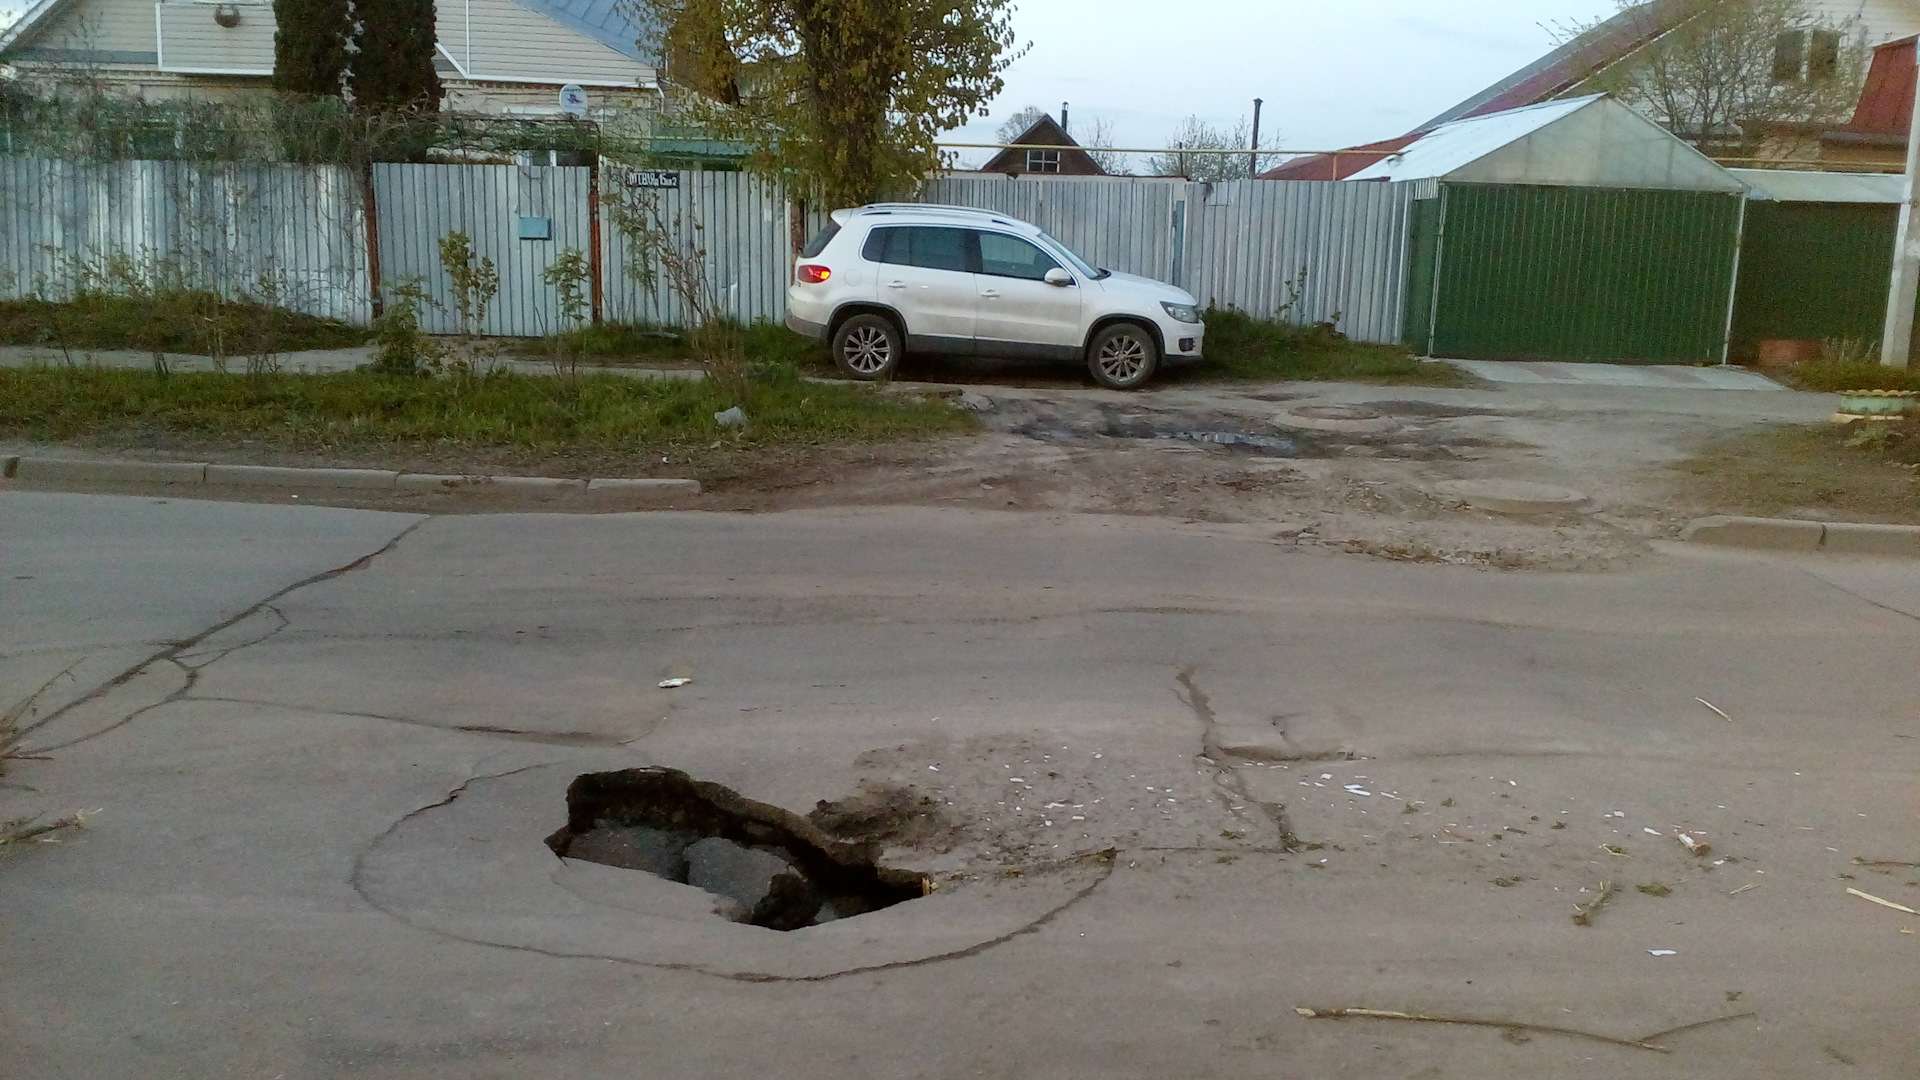 Колесо попало в яму на дороге. Ямы на дорогах. Большая яма на дороге. Яма в асфальте. Ямы на дорогах Красноярска.